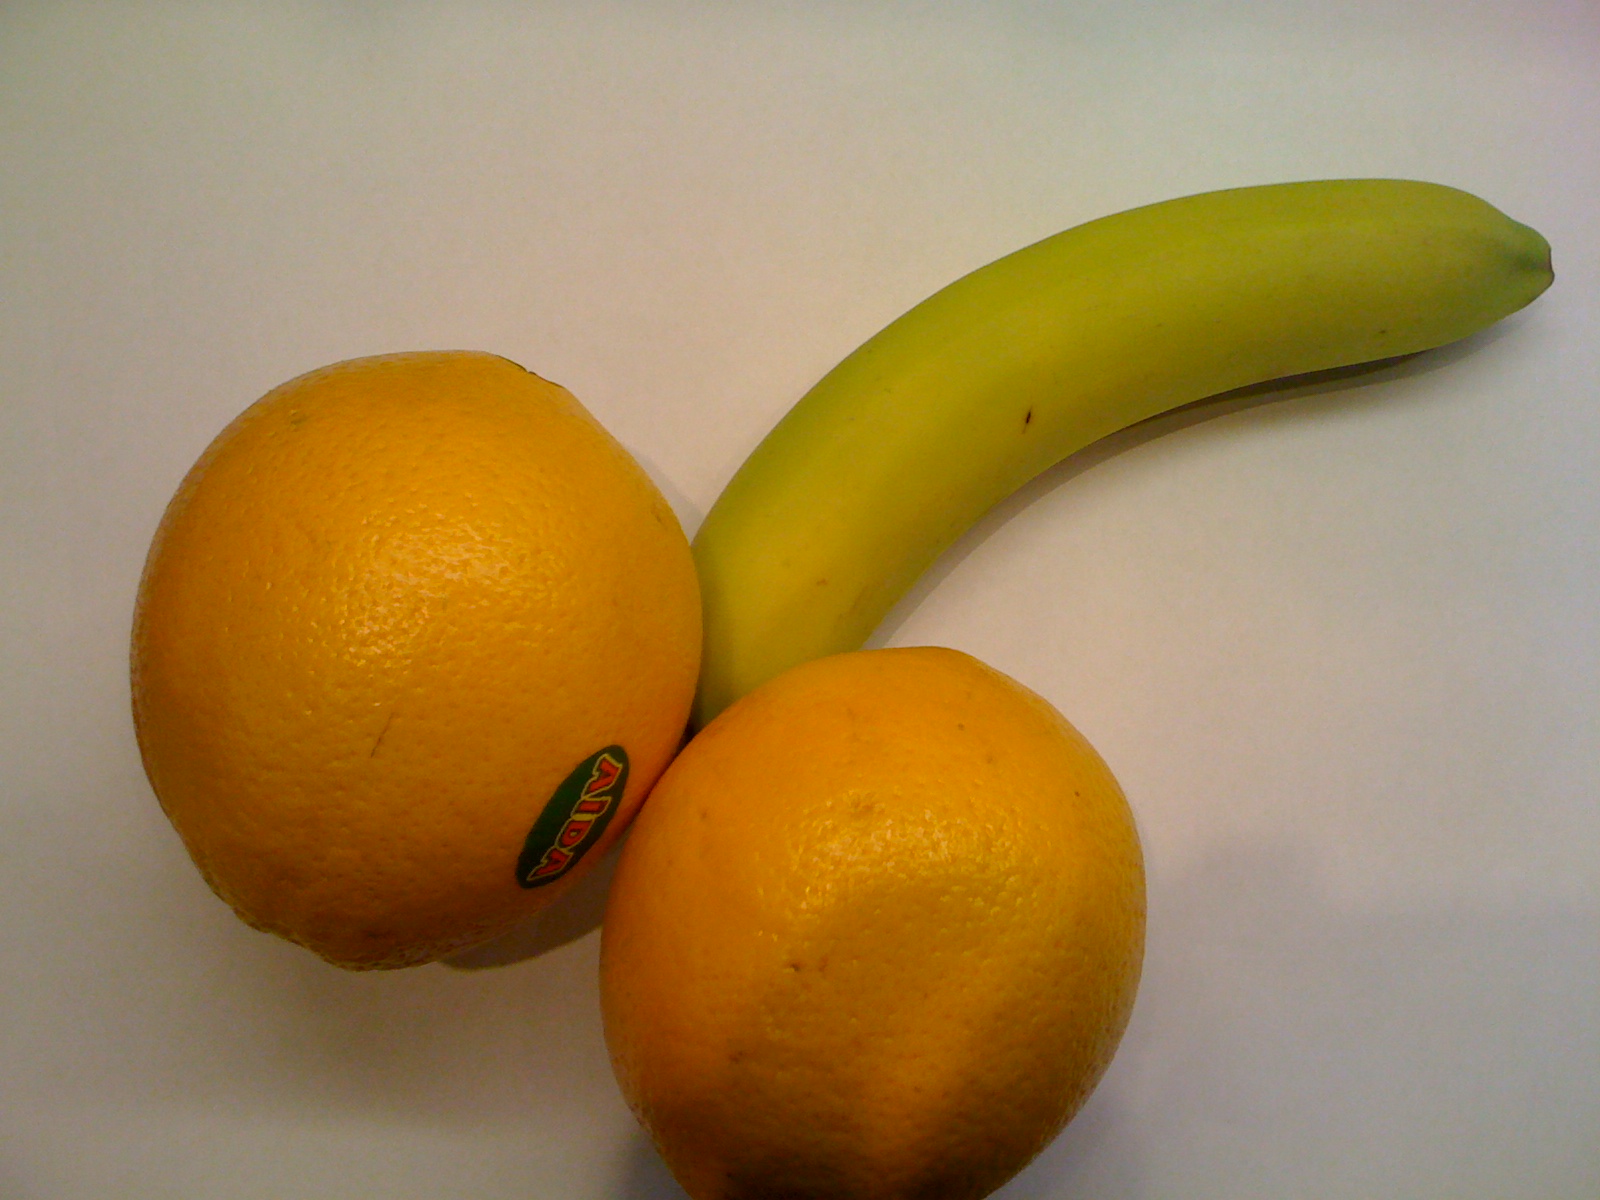 Orange and banana photo